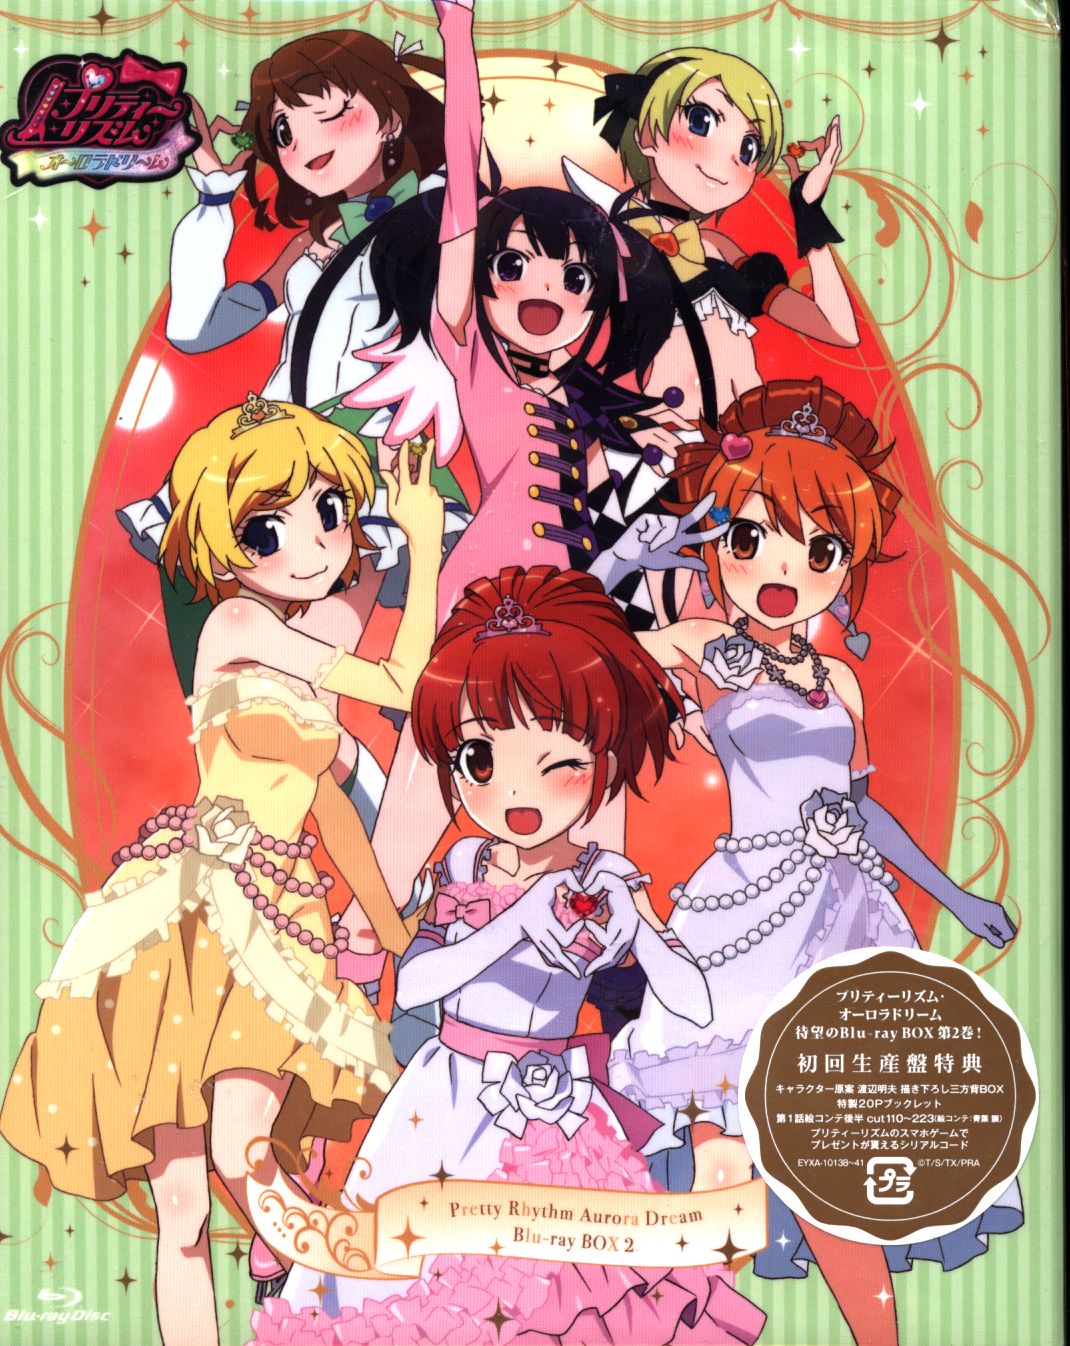 Anime Blu-Ray Pretty Rhythm ・ Aurora Dream-Ray BOX Blu 2 first edition  version | Mandarake Online Shop